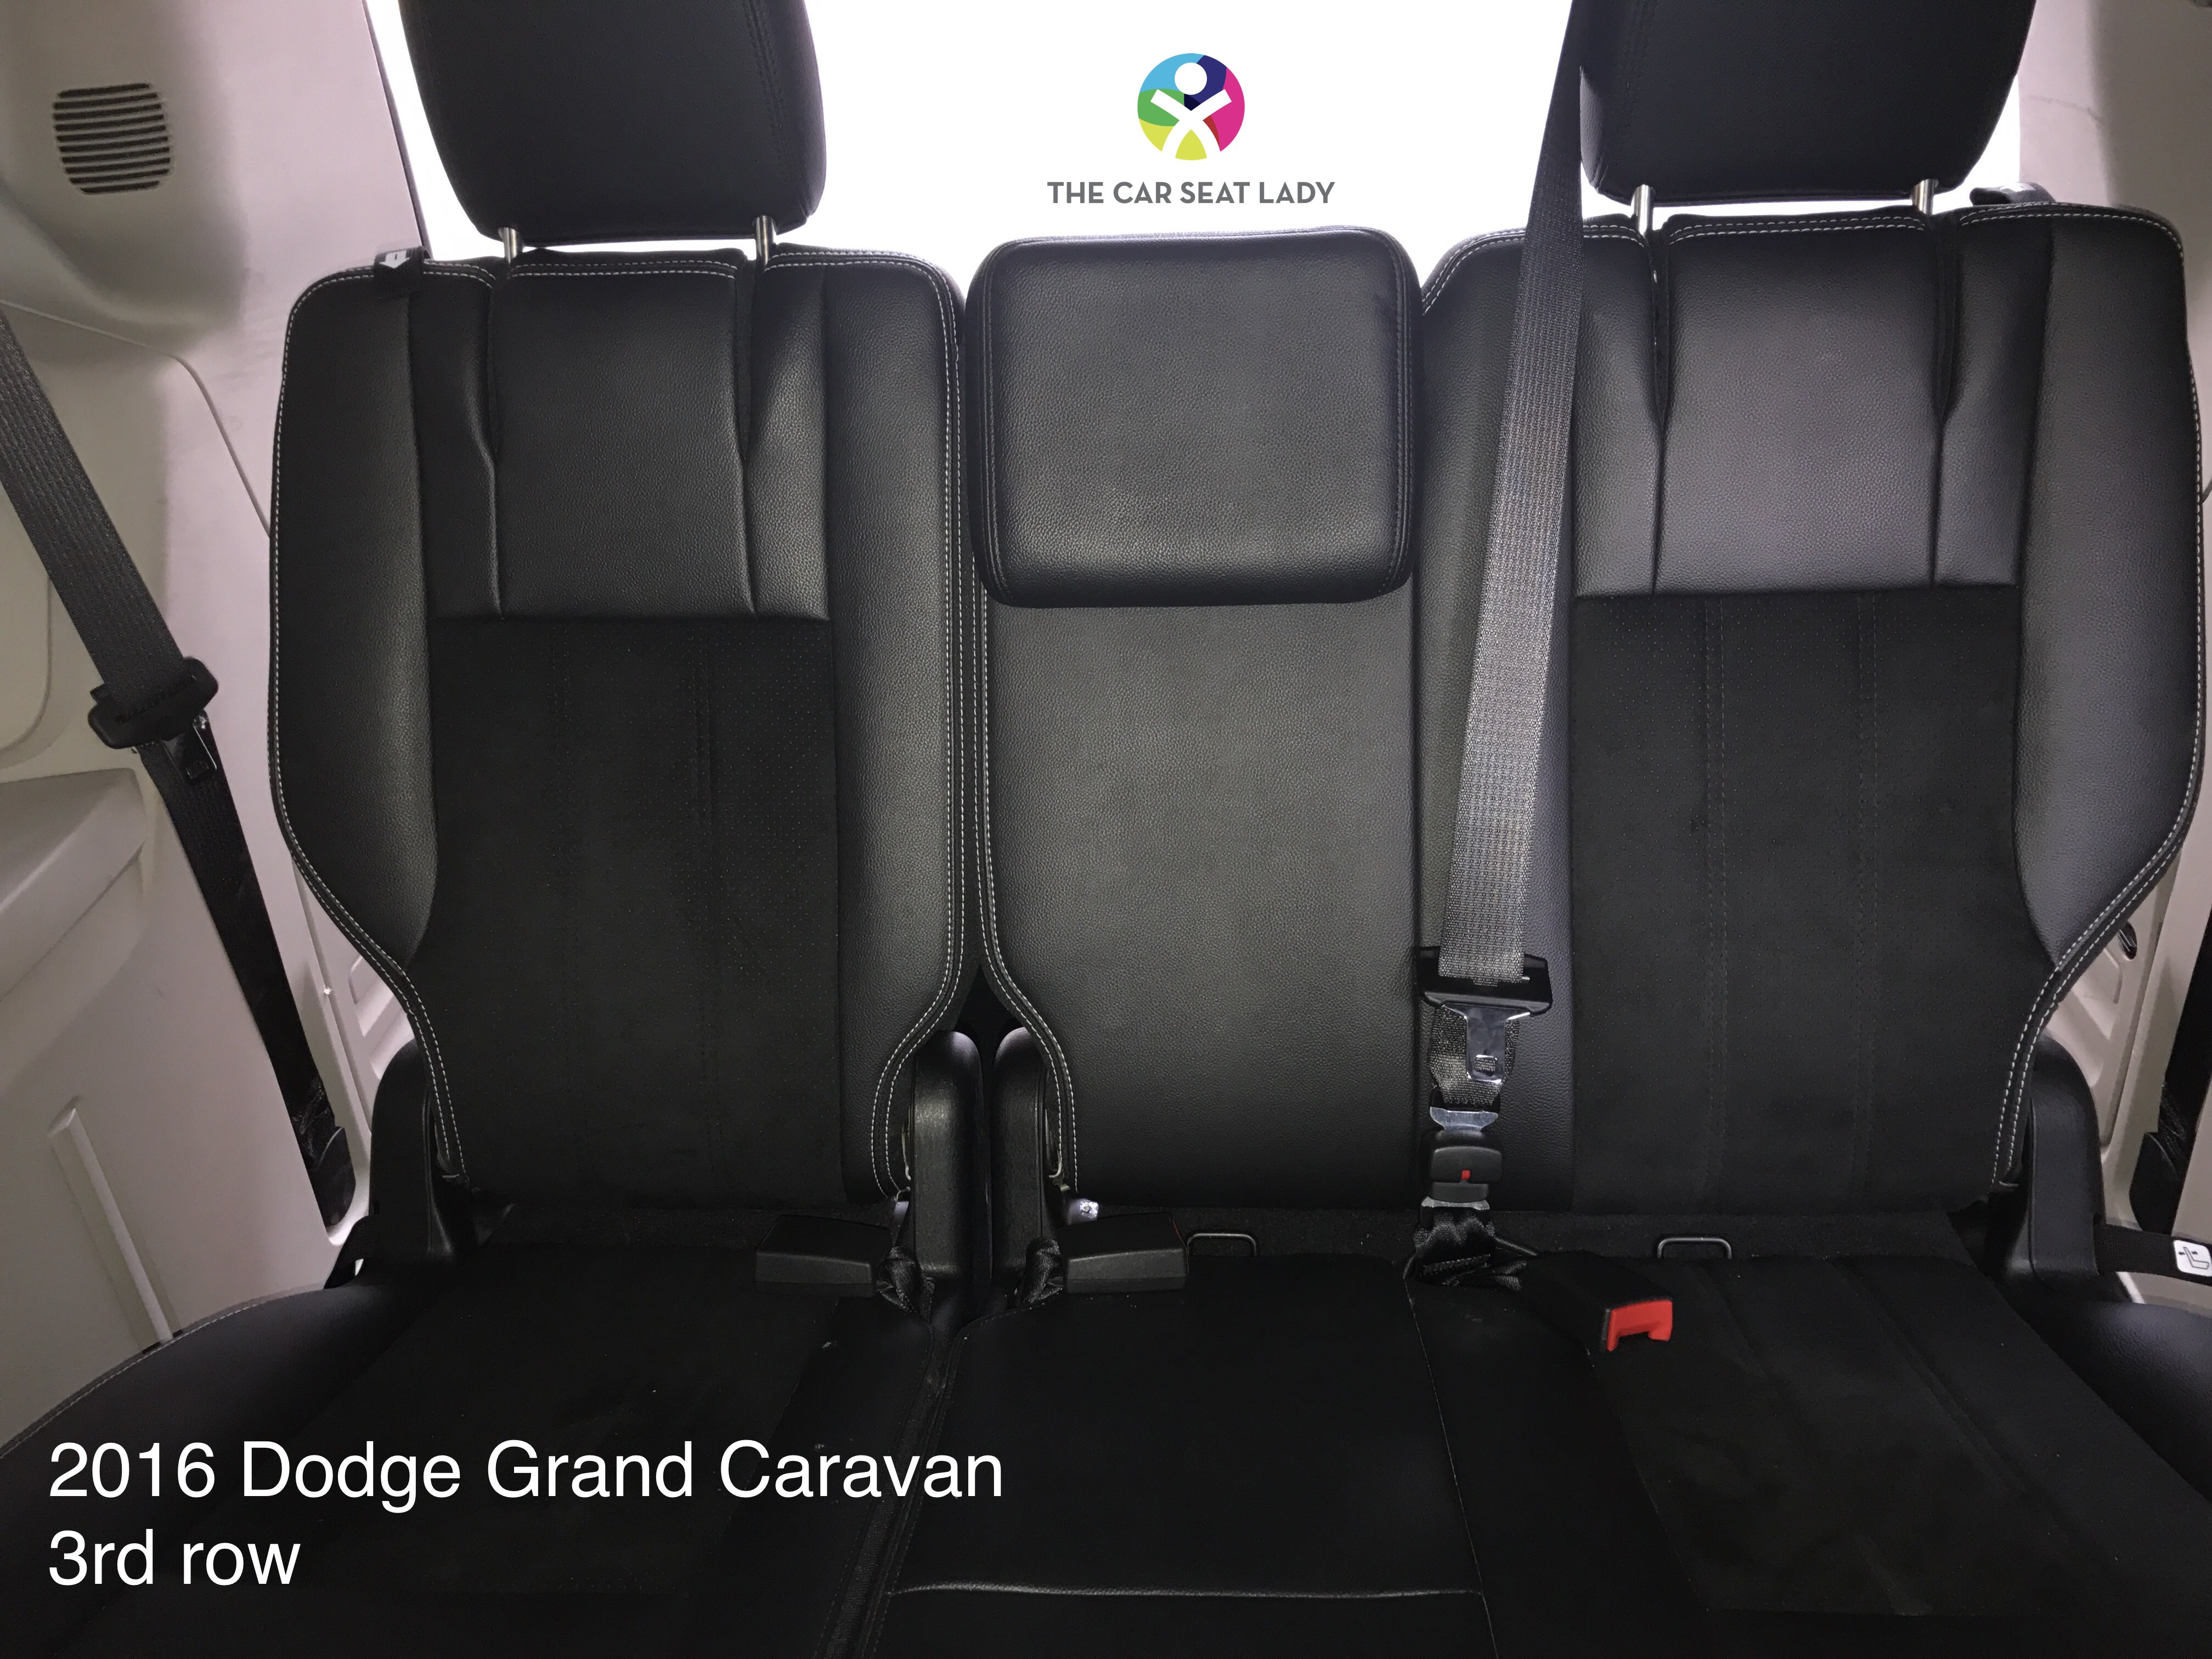 Dodge Grand Caravan Seating Chart